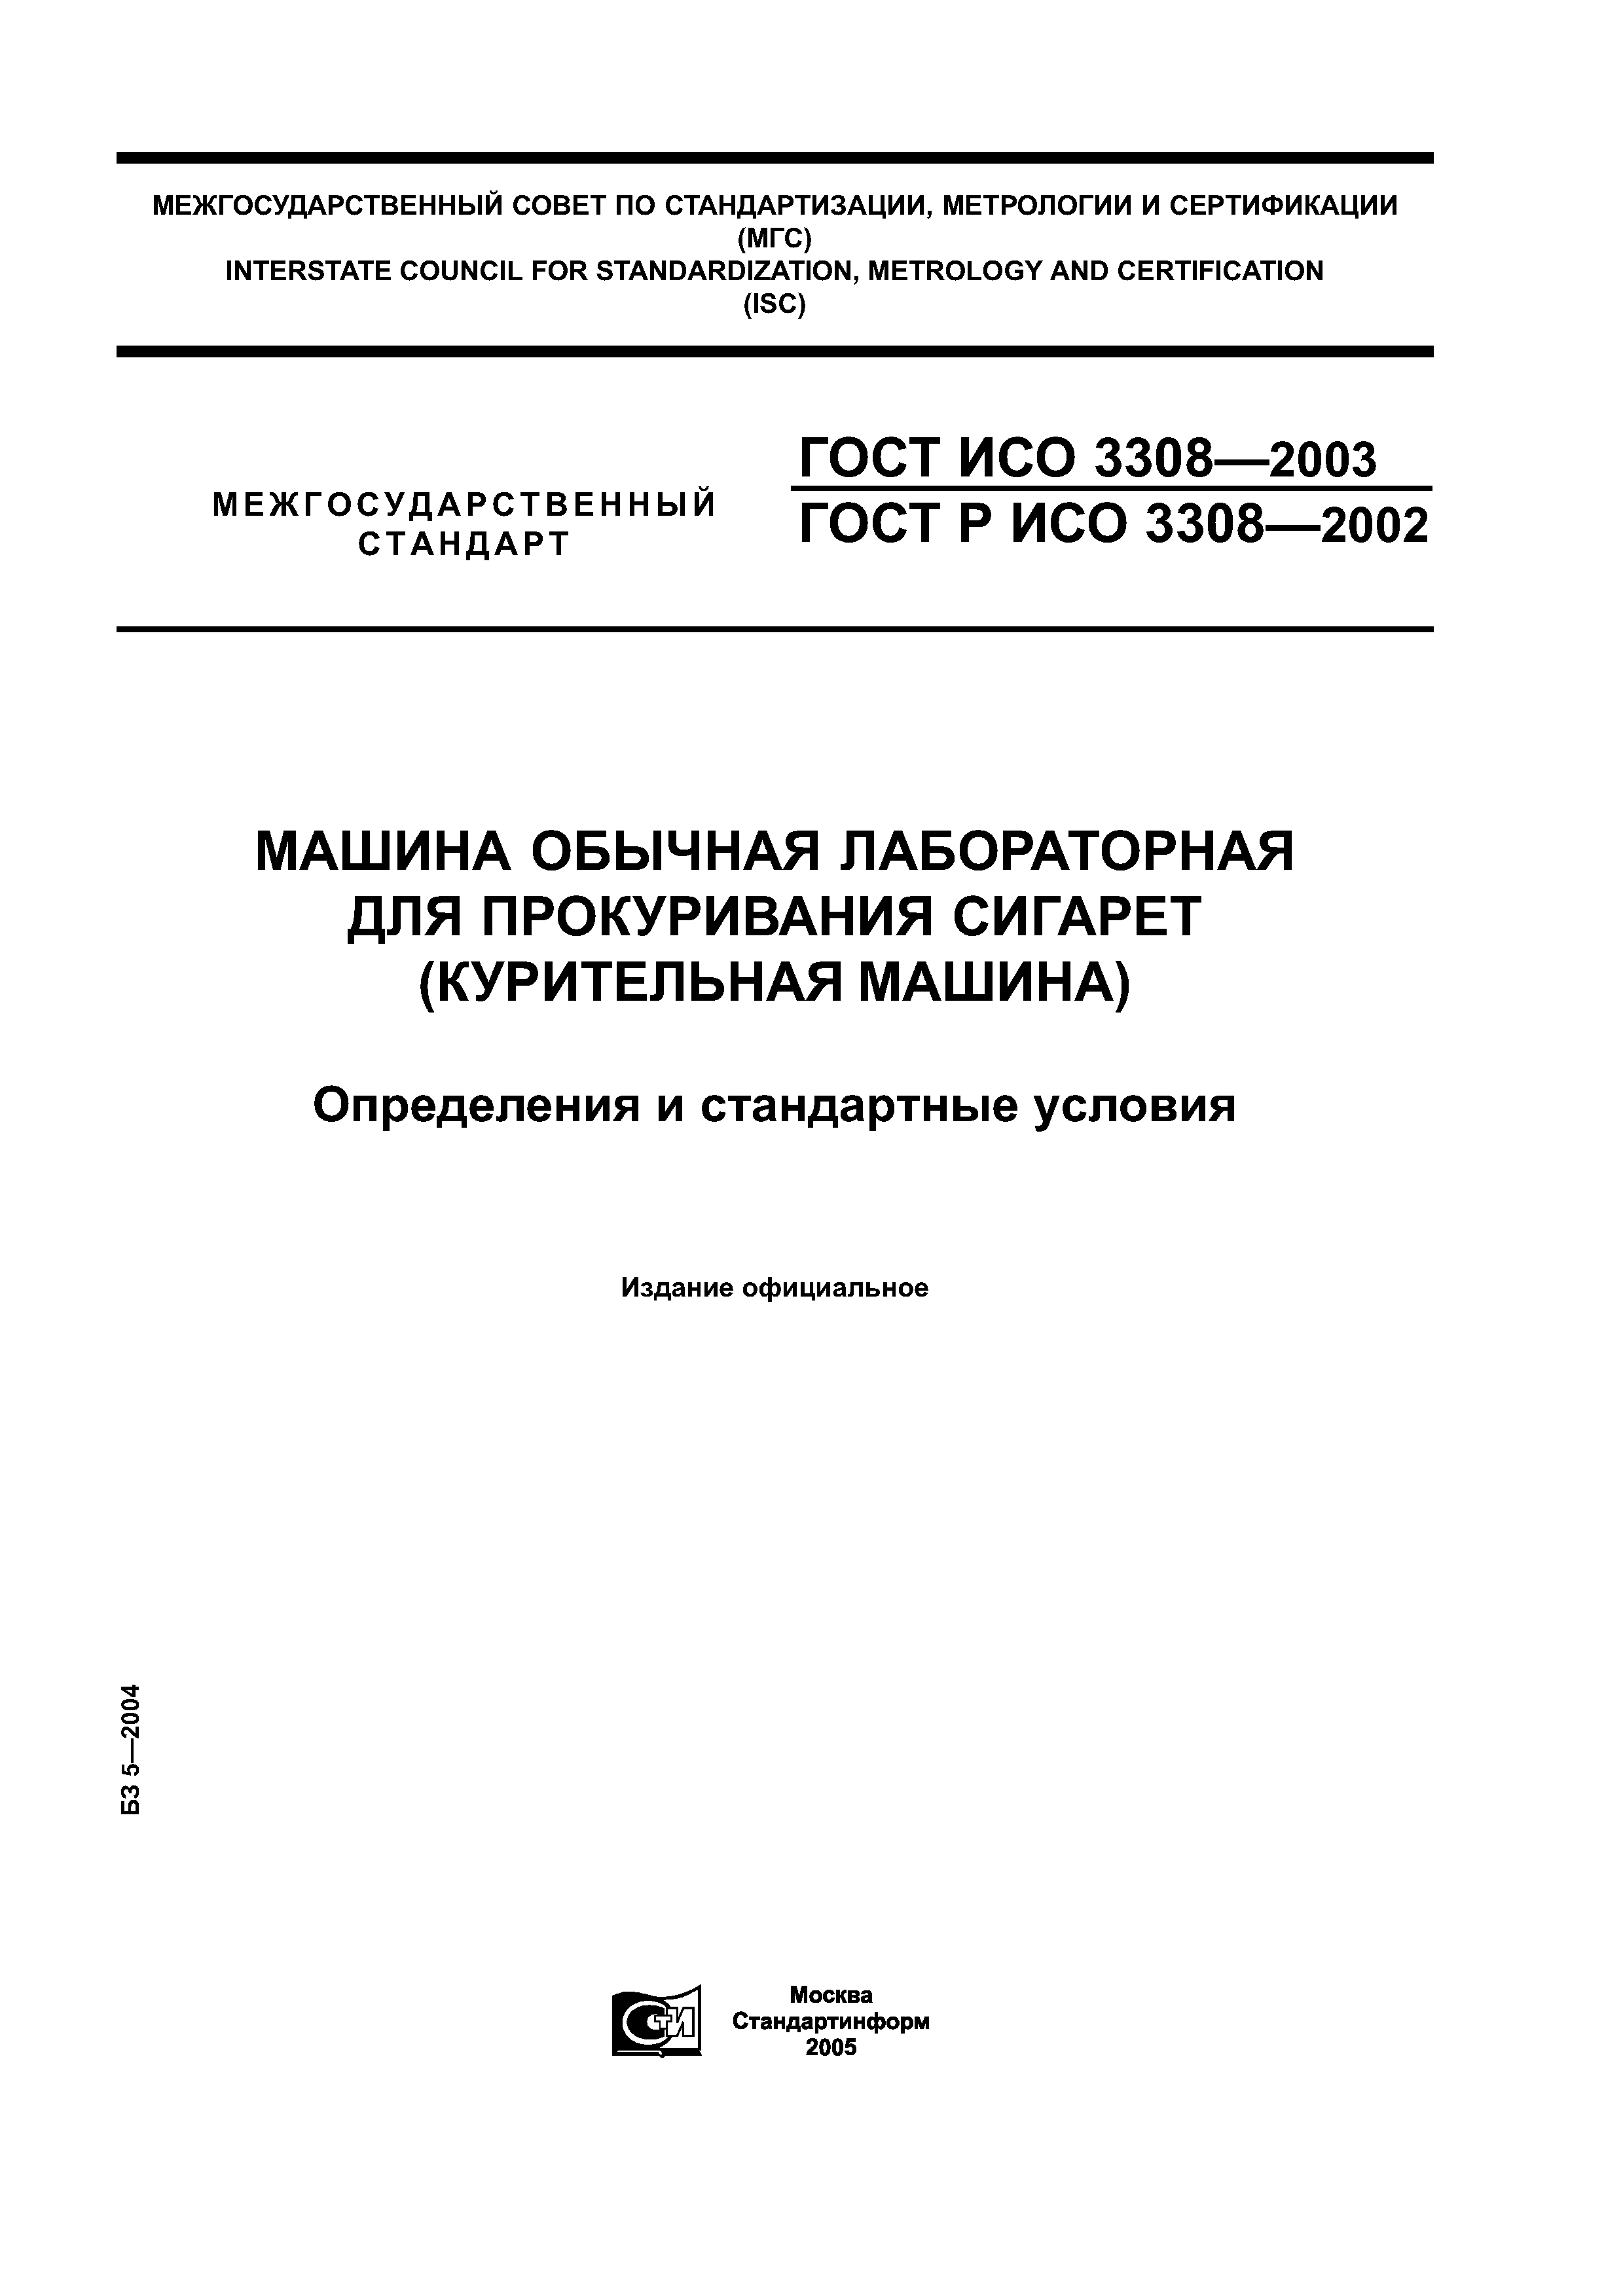 ГОСТ Р ИСО 3308-2002